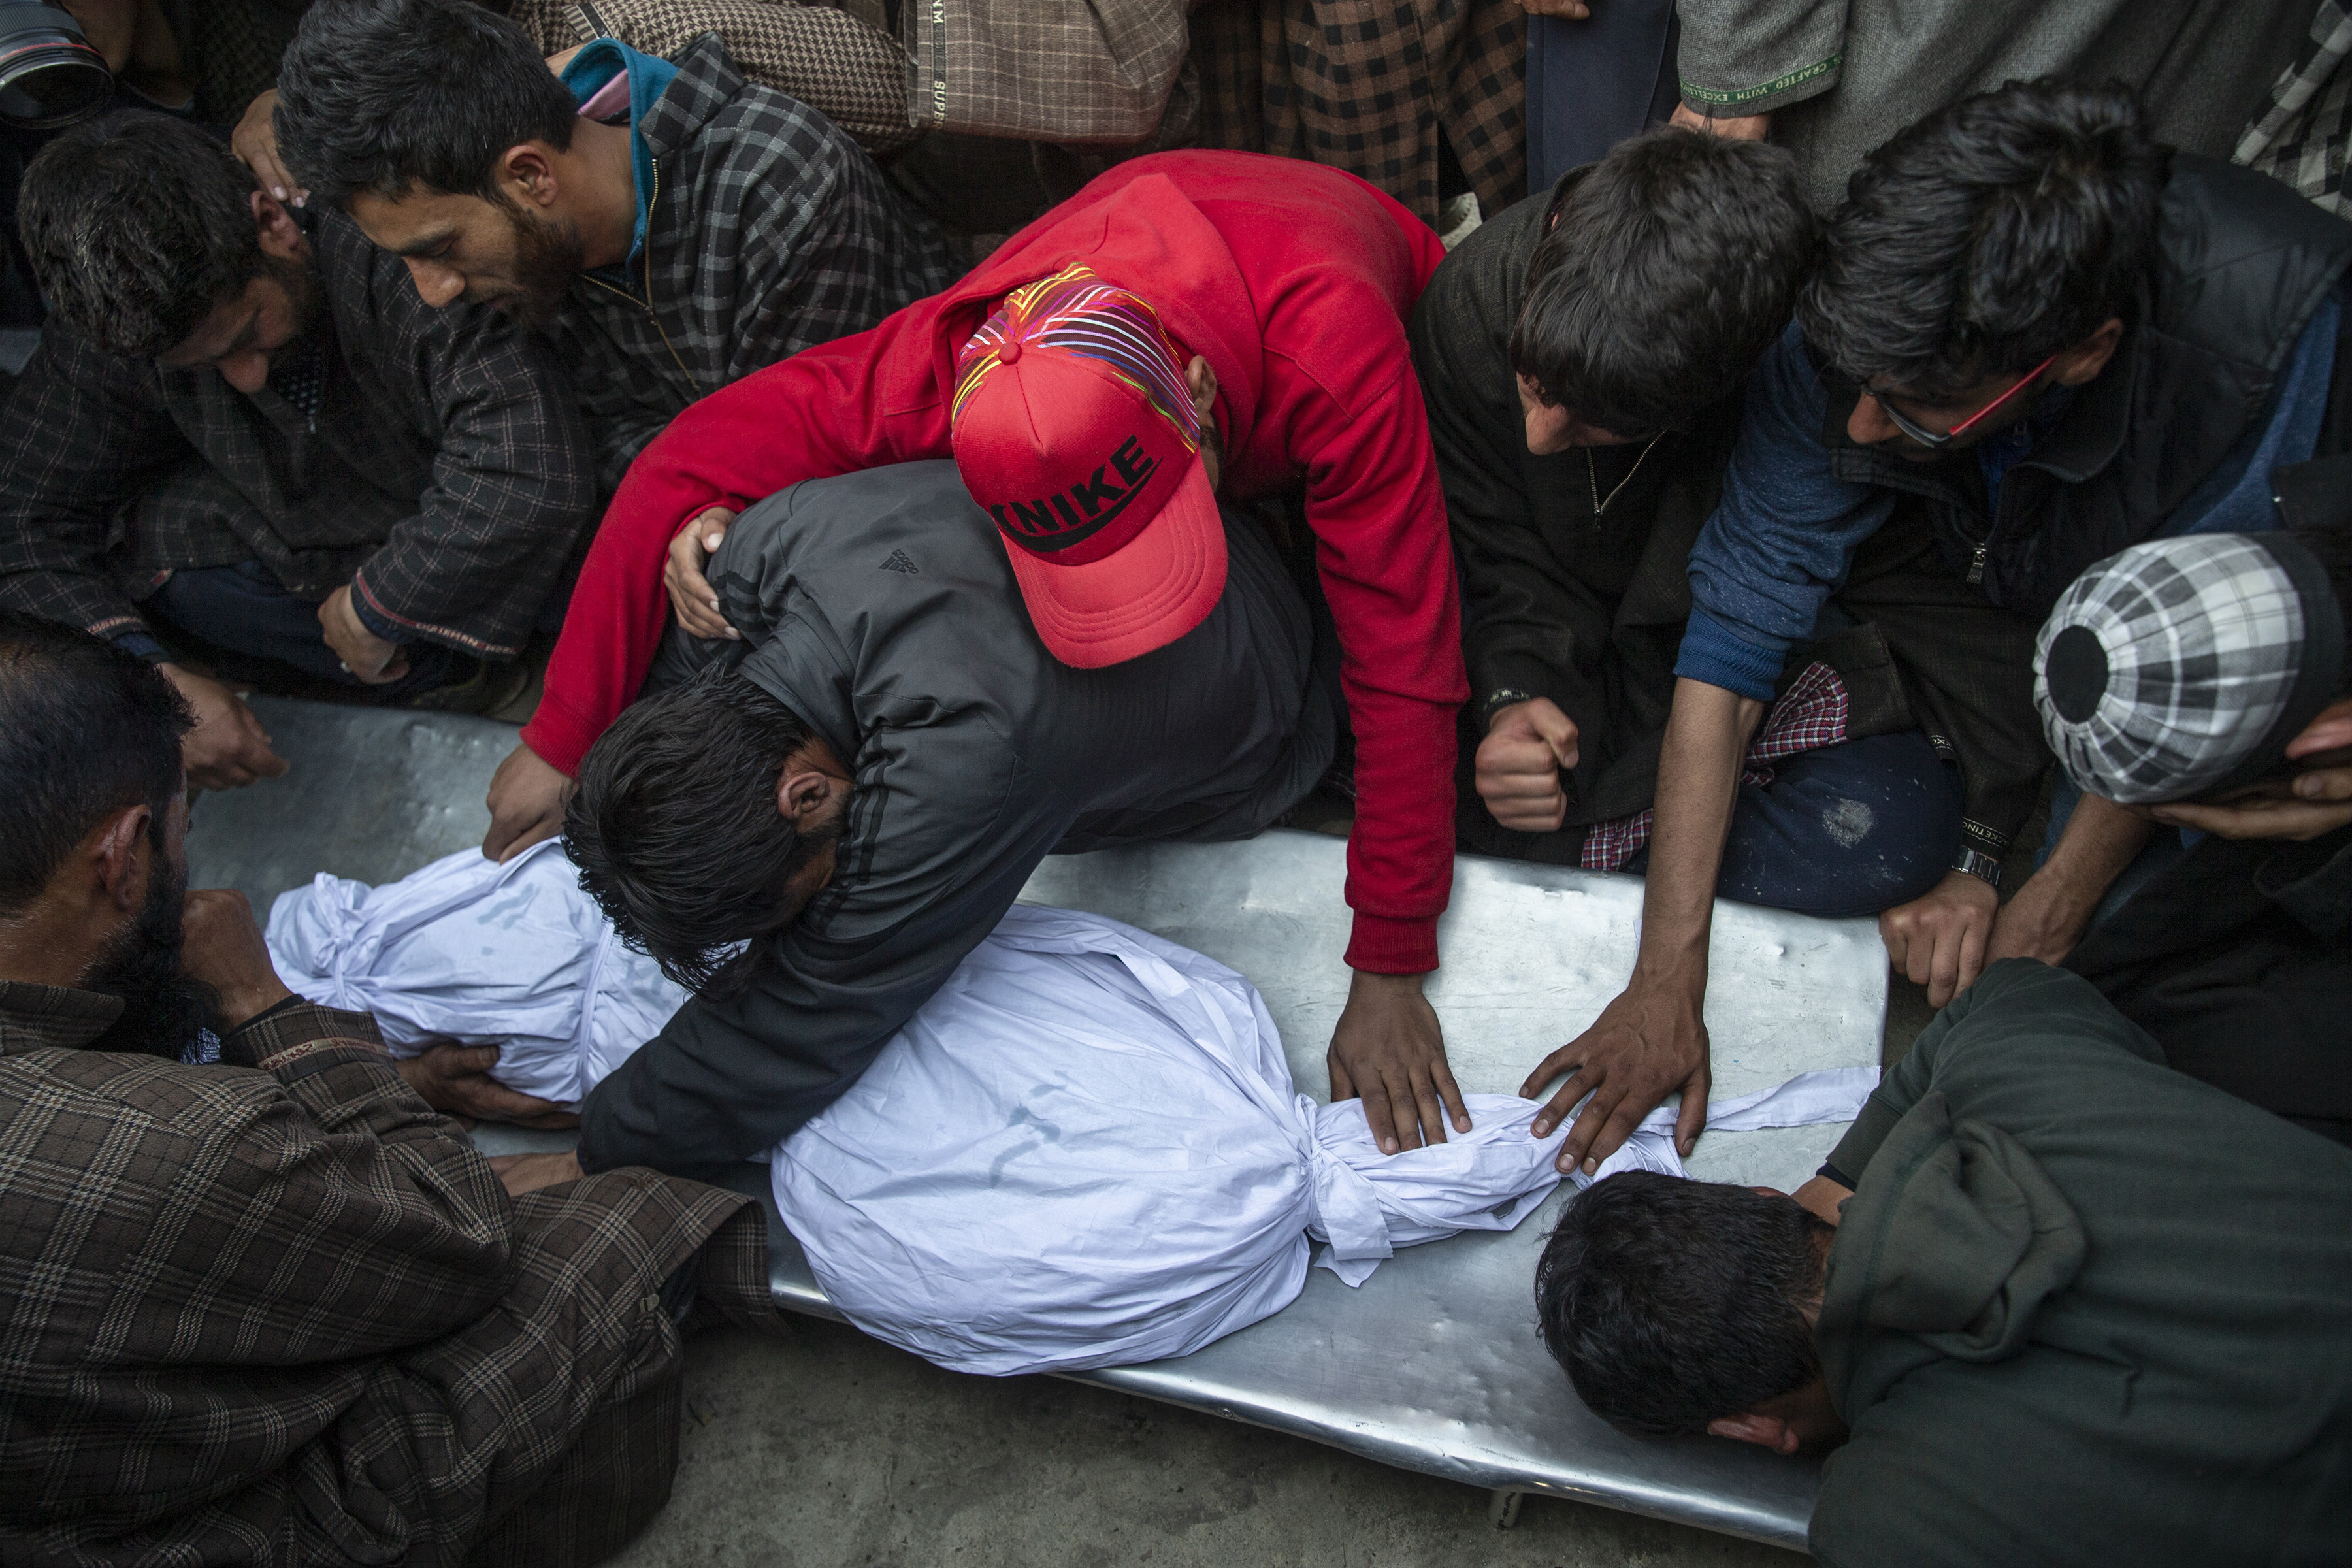 Los aldeanos de Cachemira se lamentan cerca del cuerpo de un niño de 11 años, Aatif Mir, durante su procesión fúnebre en la aldea de Hajin, al norte de Srinagar, controlada por los indios Cachemira, el 22 de marzo de 2019. (Foto AP / Dar Yasin)